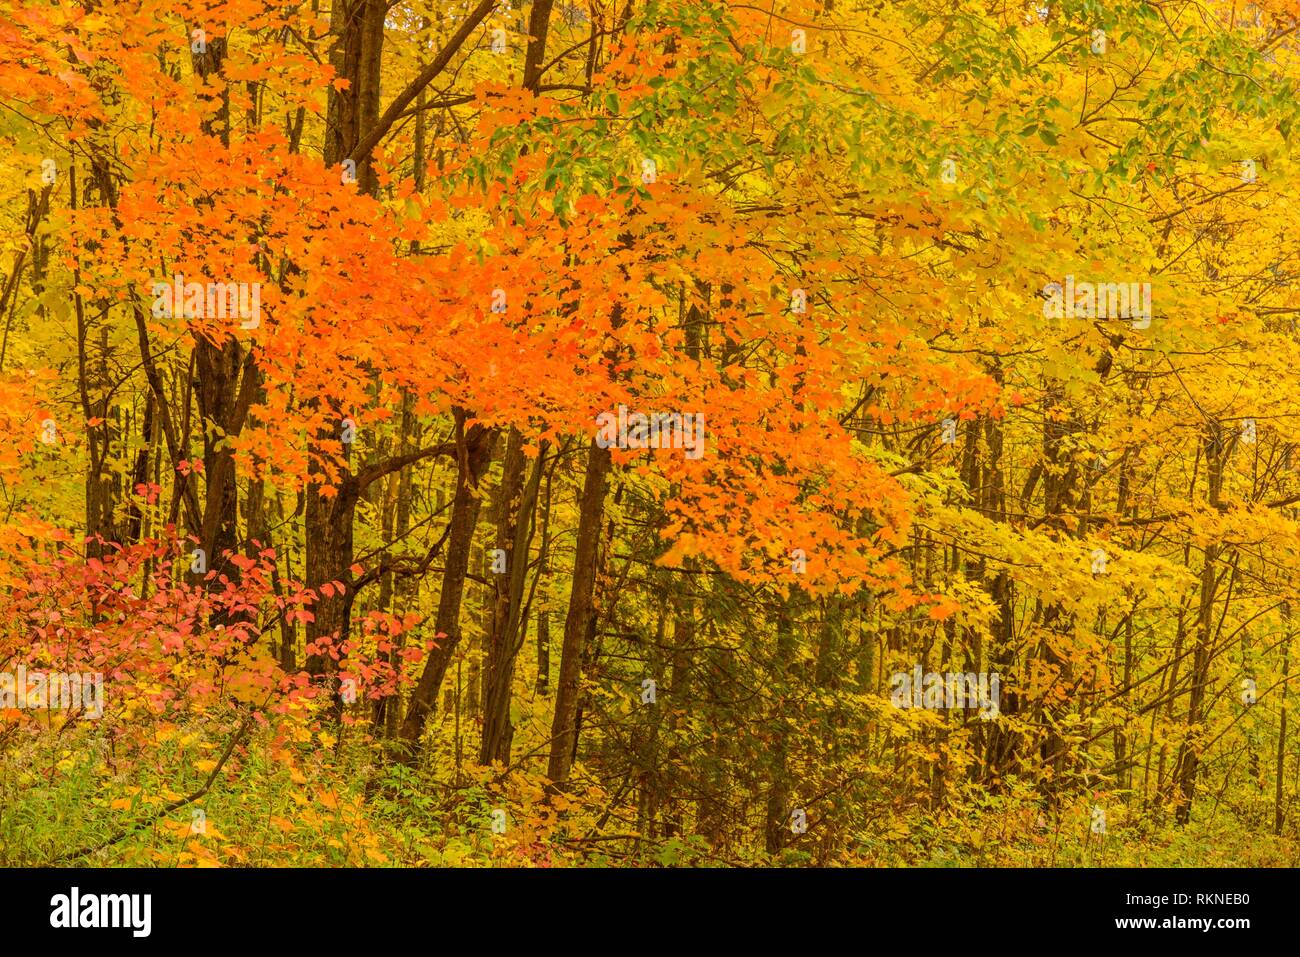 El follaje de otoño en un bosque de frondosas, Sheguiandah, Isla Manitoulin, Ontario, Canadá. Foto de stock